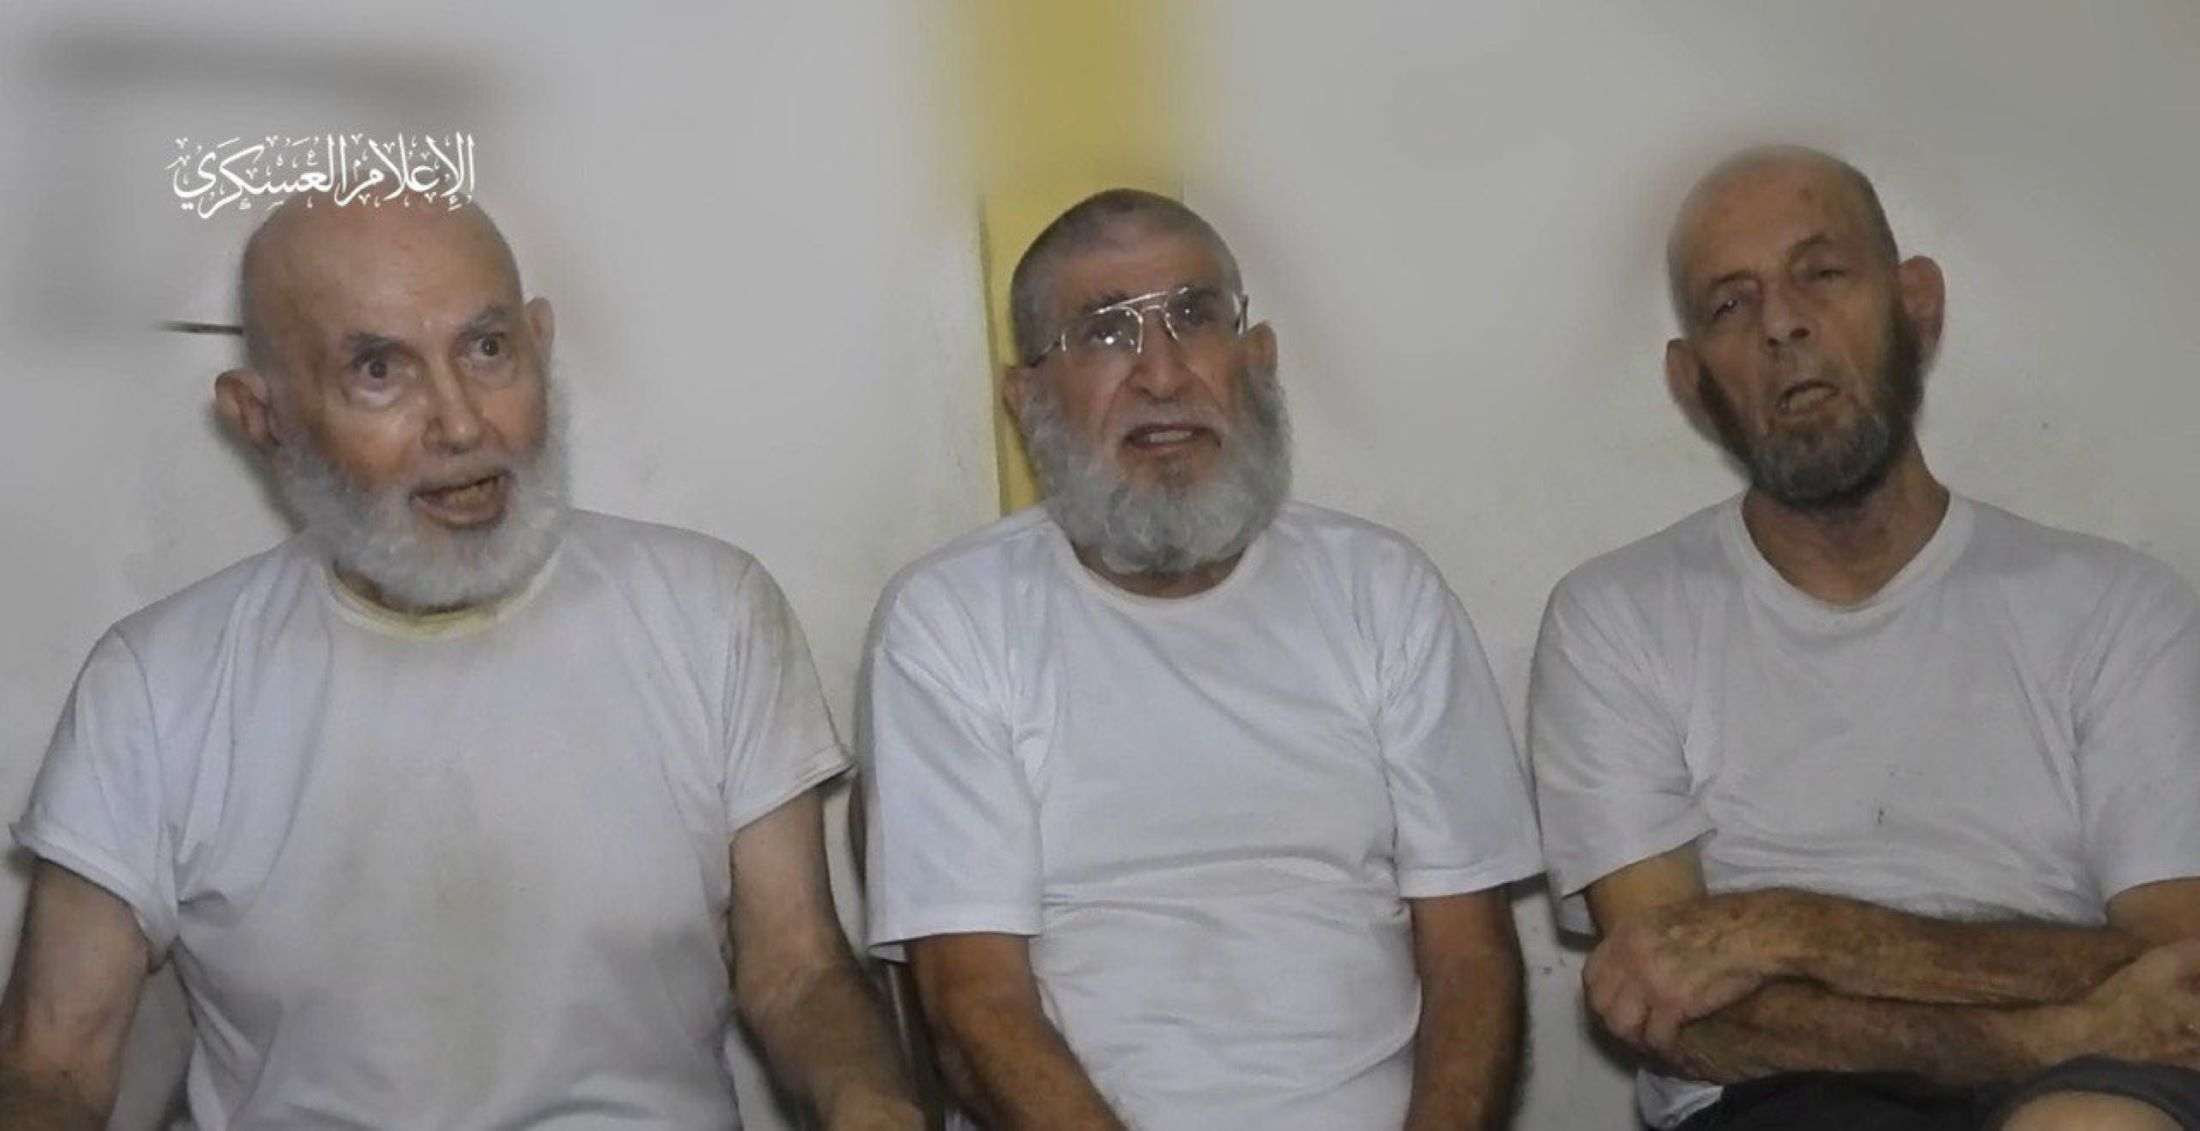 Hamàs publica un vídeo de tres ostatges que demanen ser alliberats "al preu que sigui"